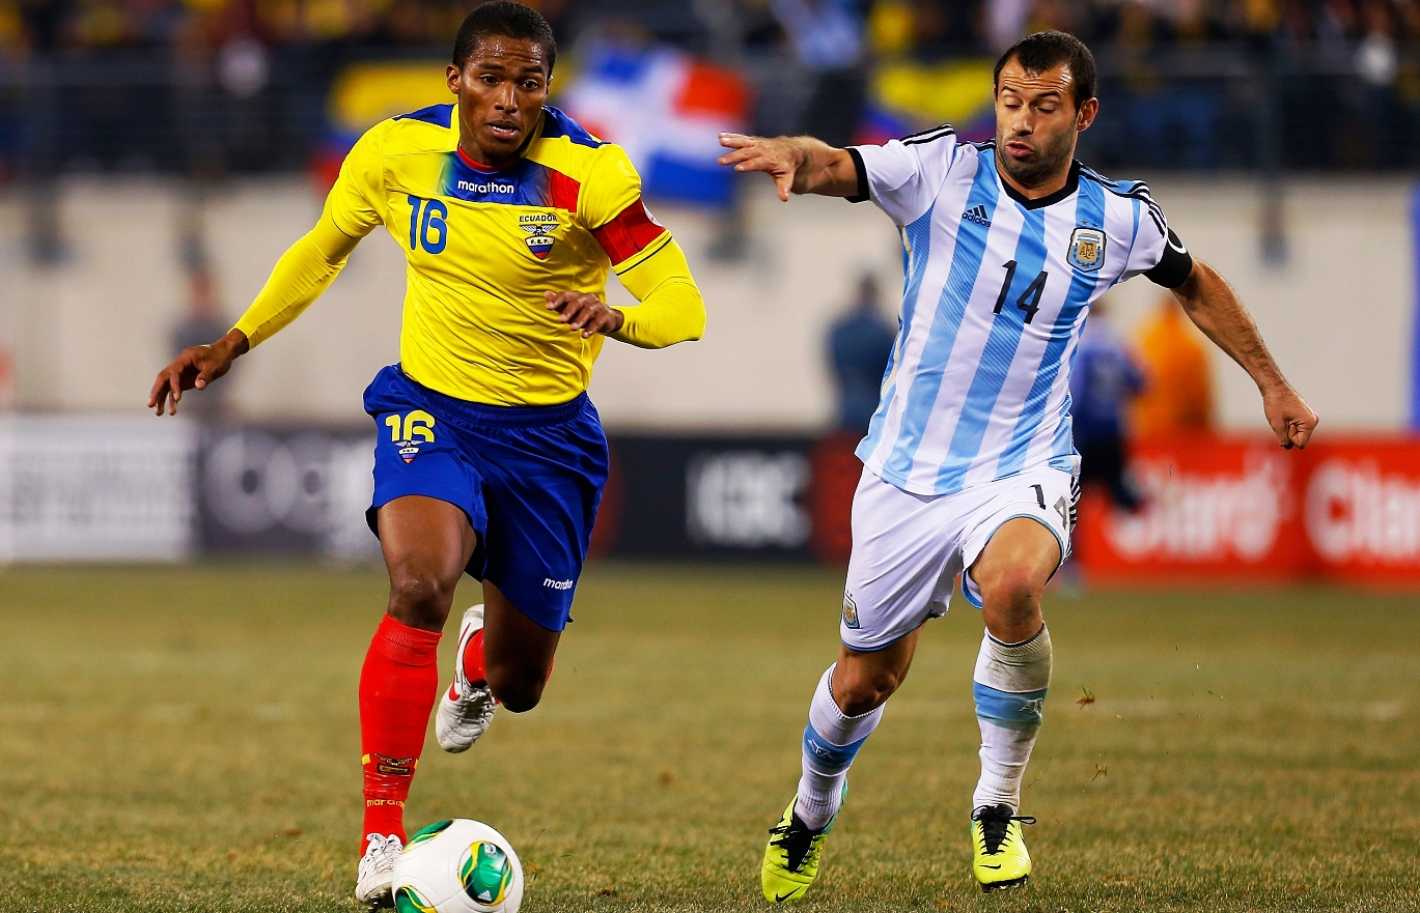 Un árbitro brasilero dirigirá Ecuador - Argentina - Mendoza Post